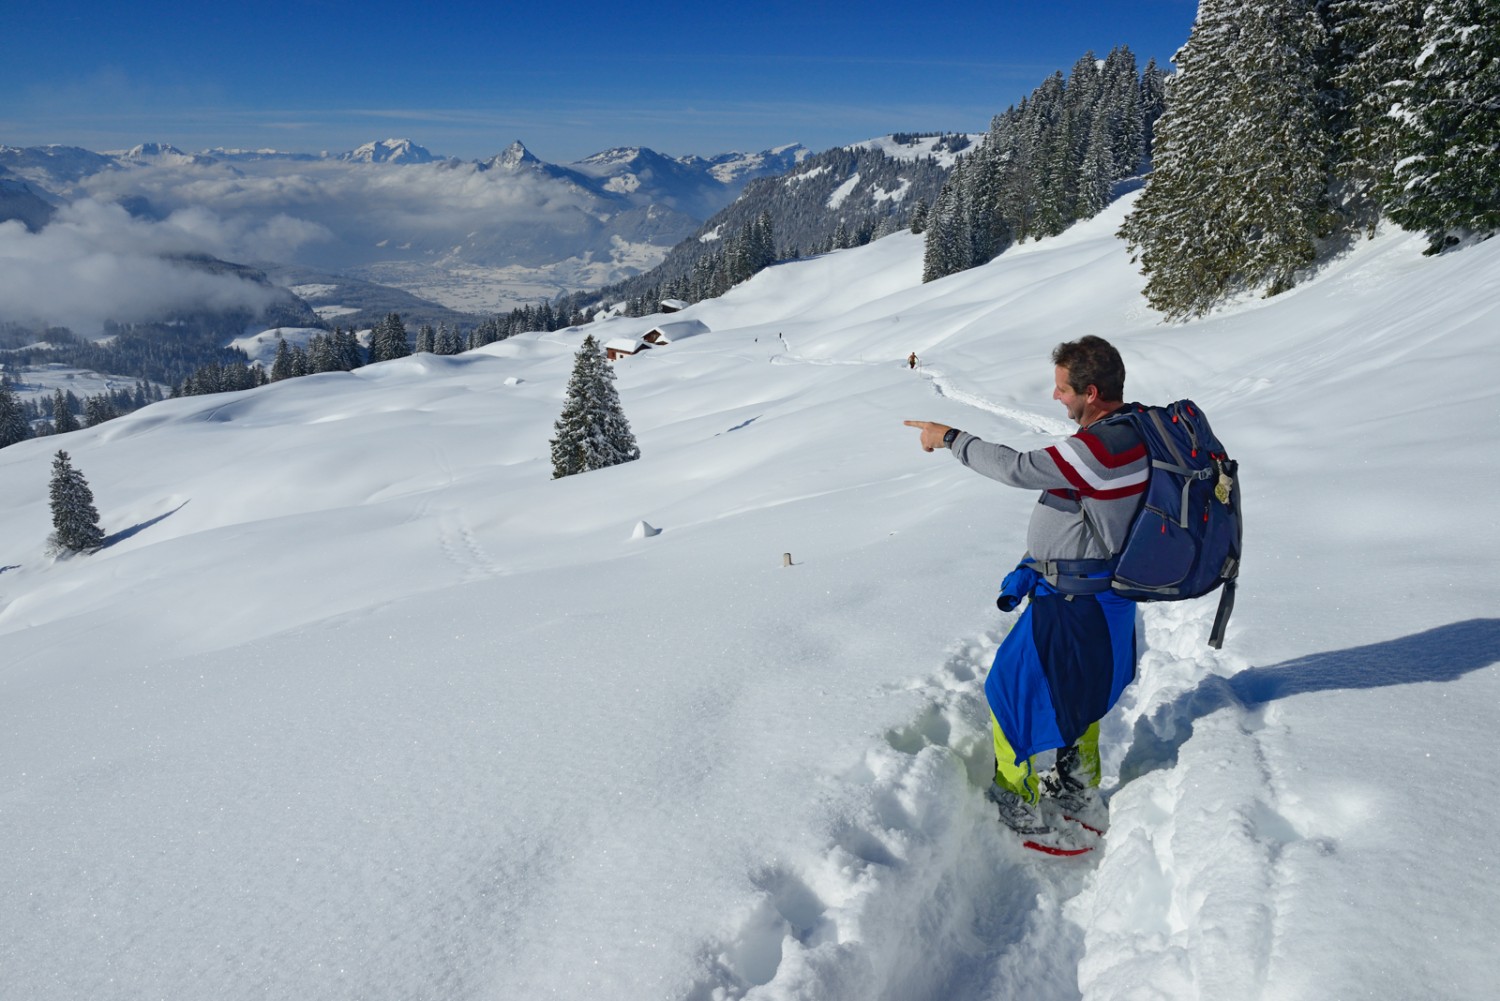 Der Schneeschuhweg sonnseitig beim Hudelschijen. Von hier bietet sich eine prächtige Sicht auf die Bergwelt rund um den Stoos.